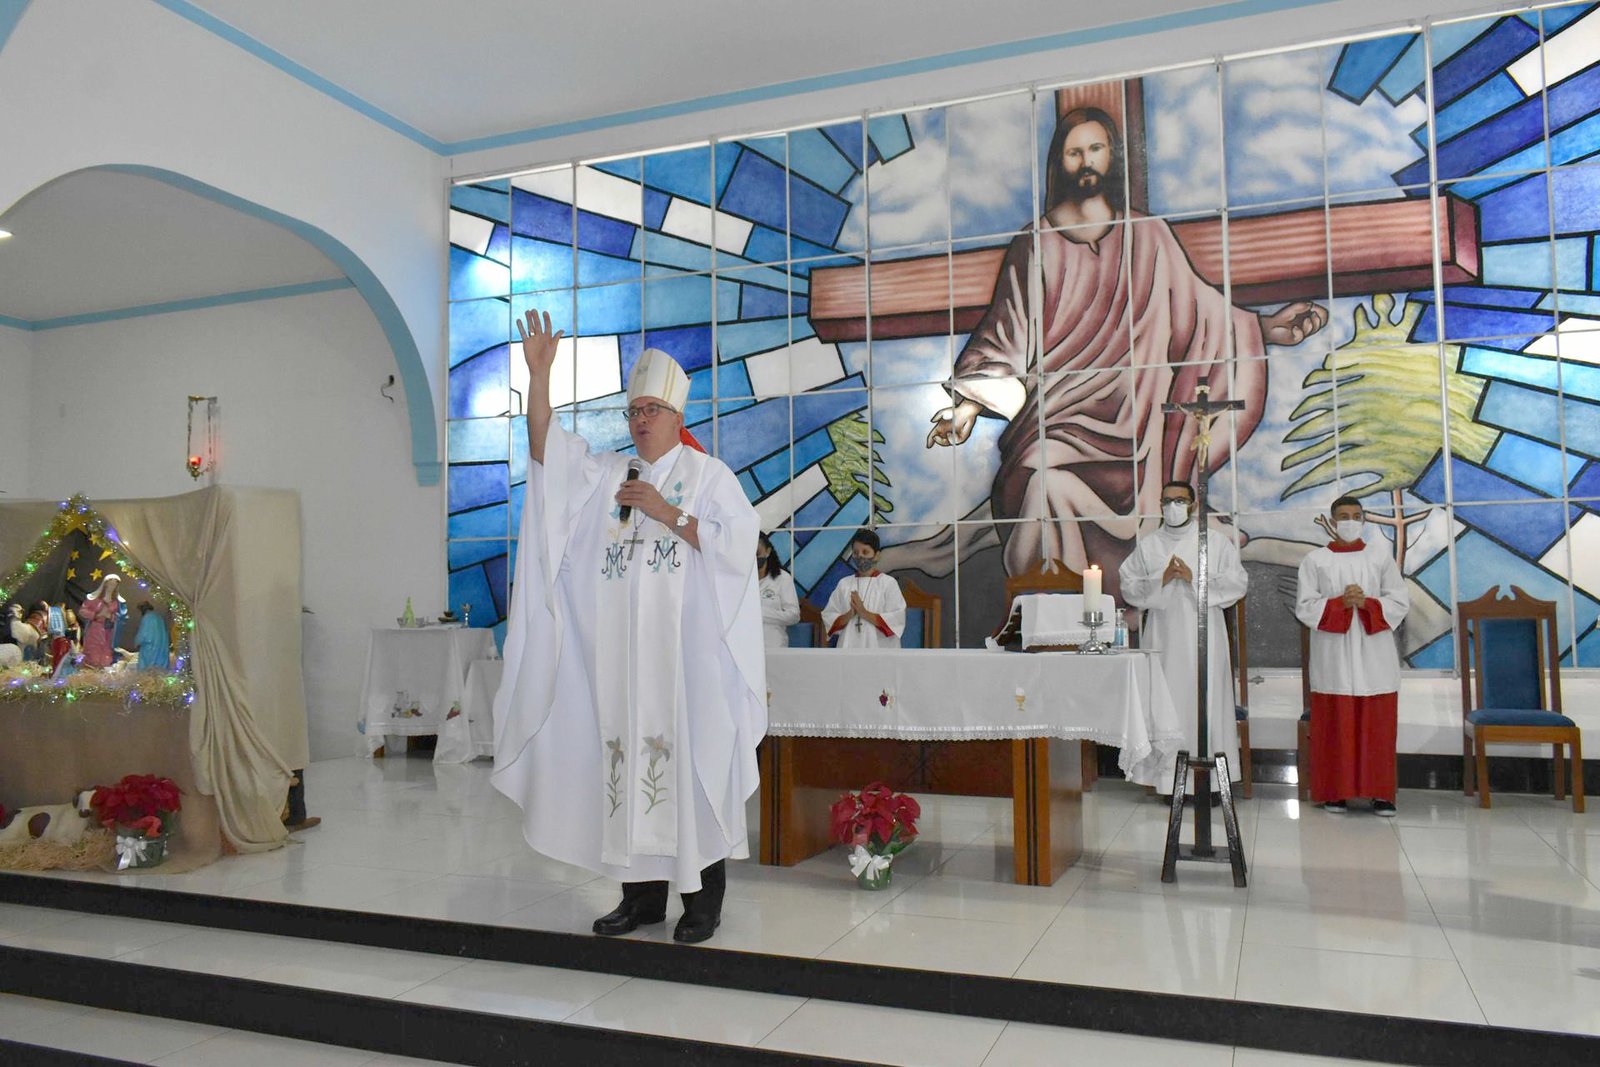 Dom Geremias preside missa de fim de ano na Paróquia Nossa Senhora das Graças de Ibiporã